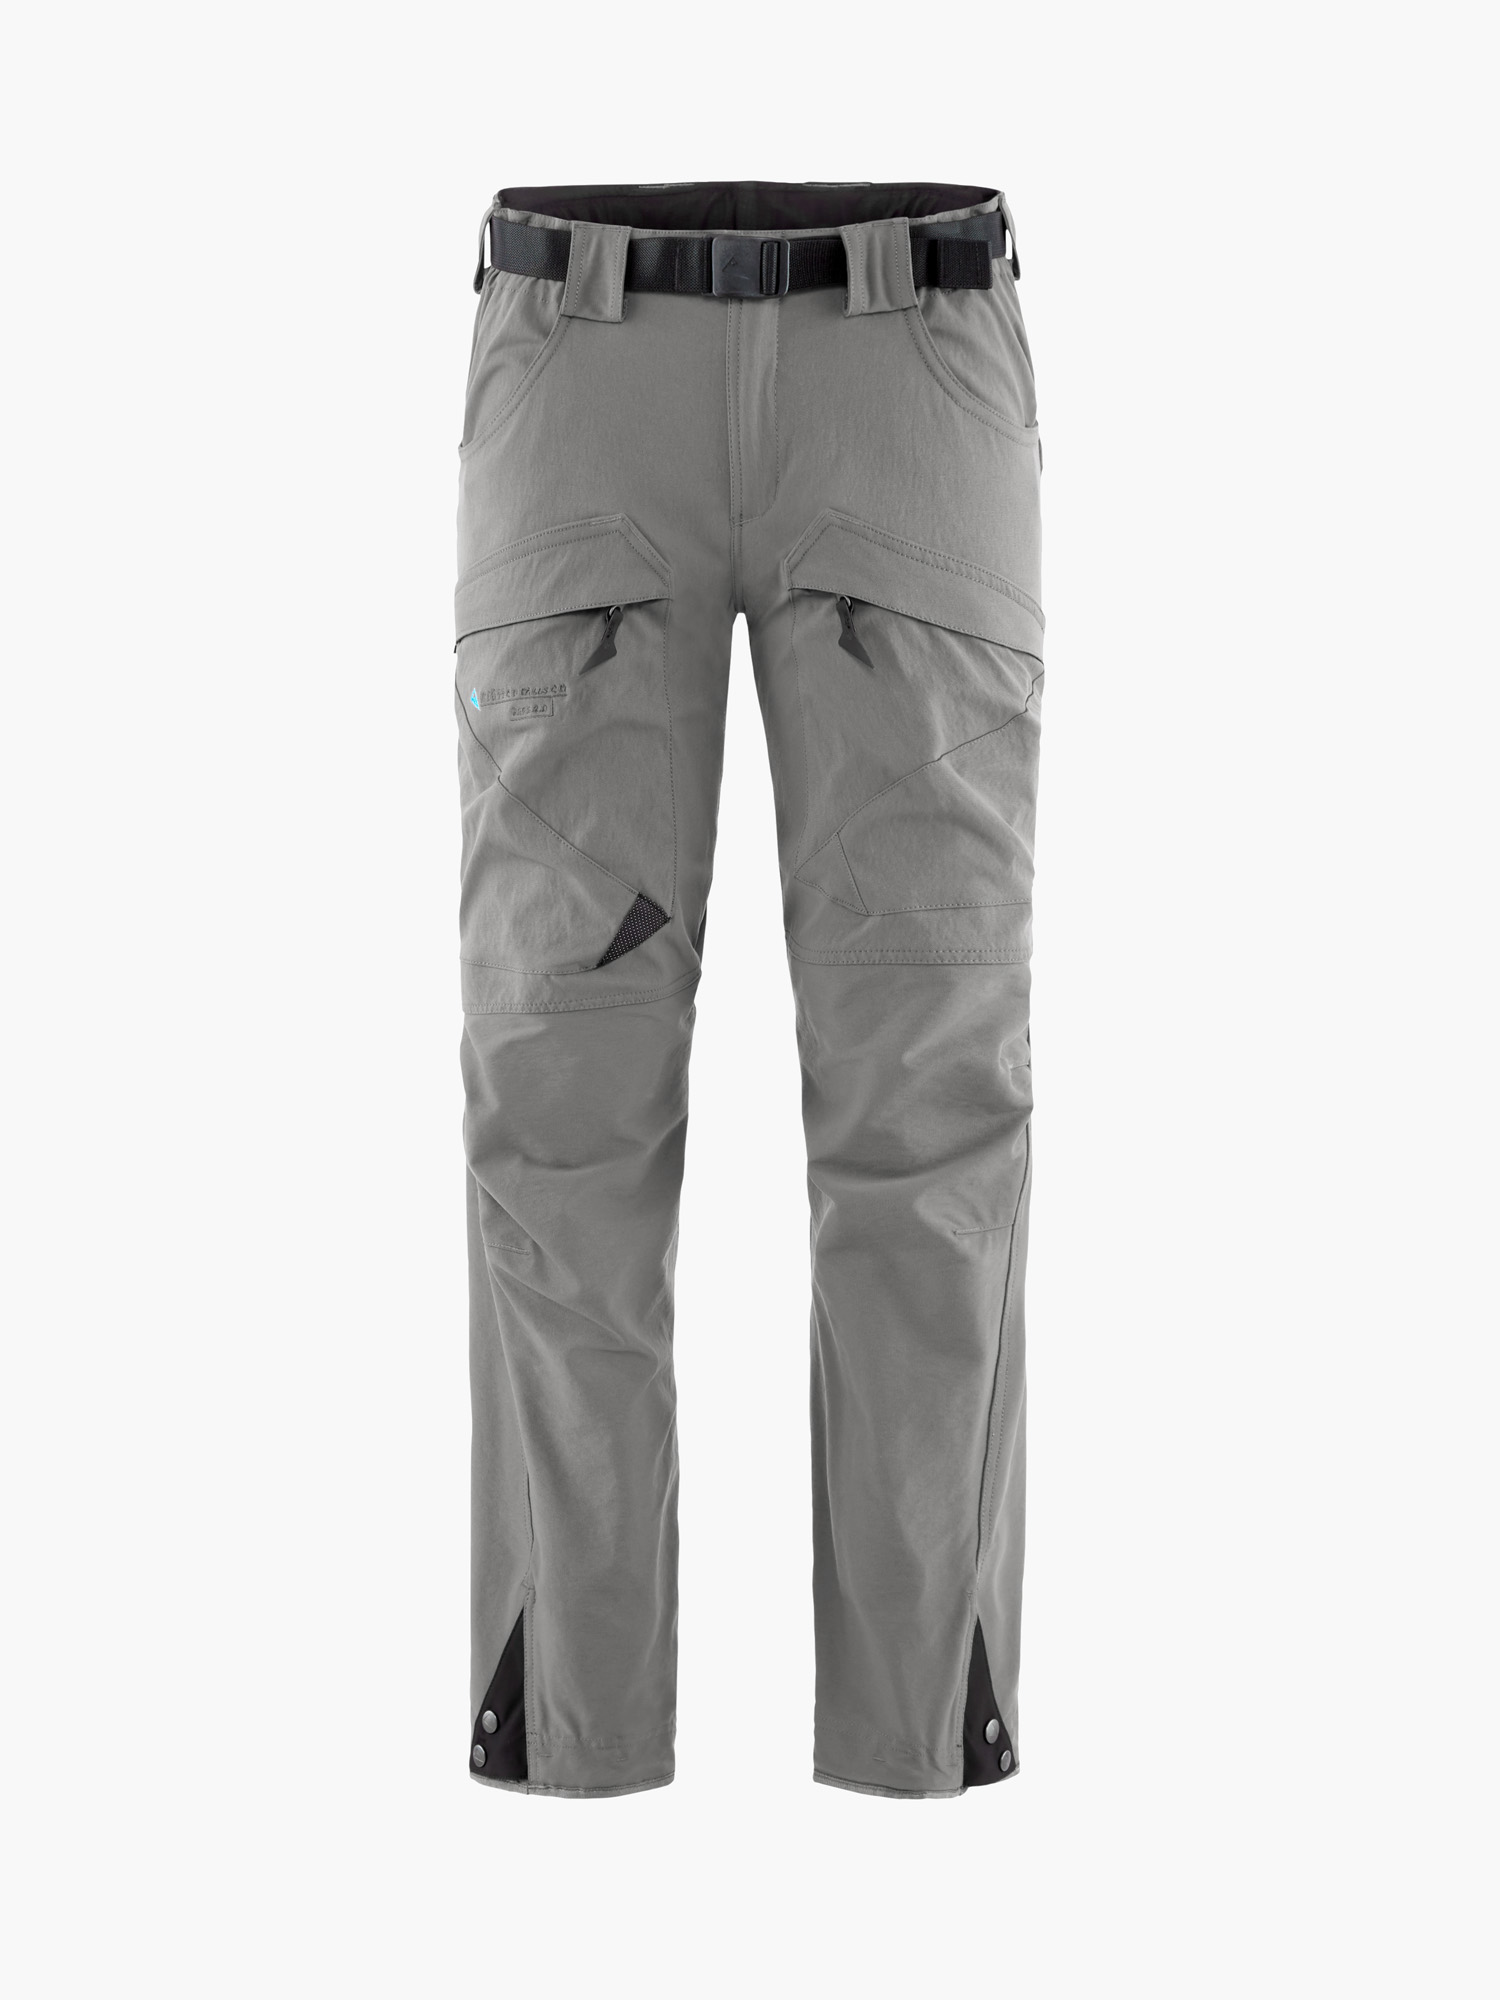 15421W81 - Gere 2.0 Pants Short W's - Slate Grey